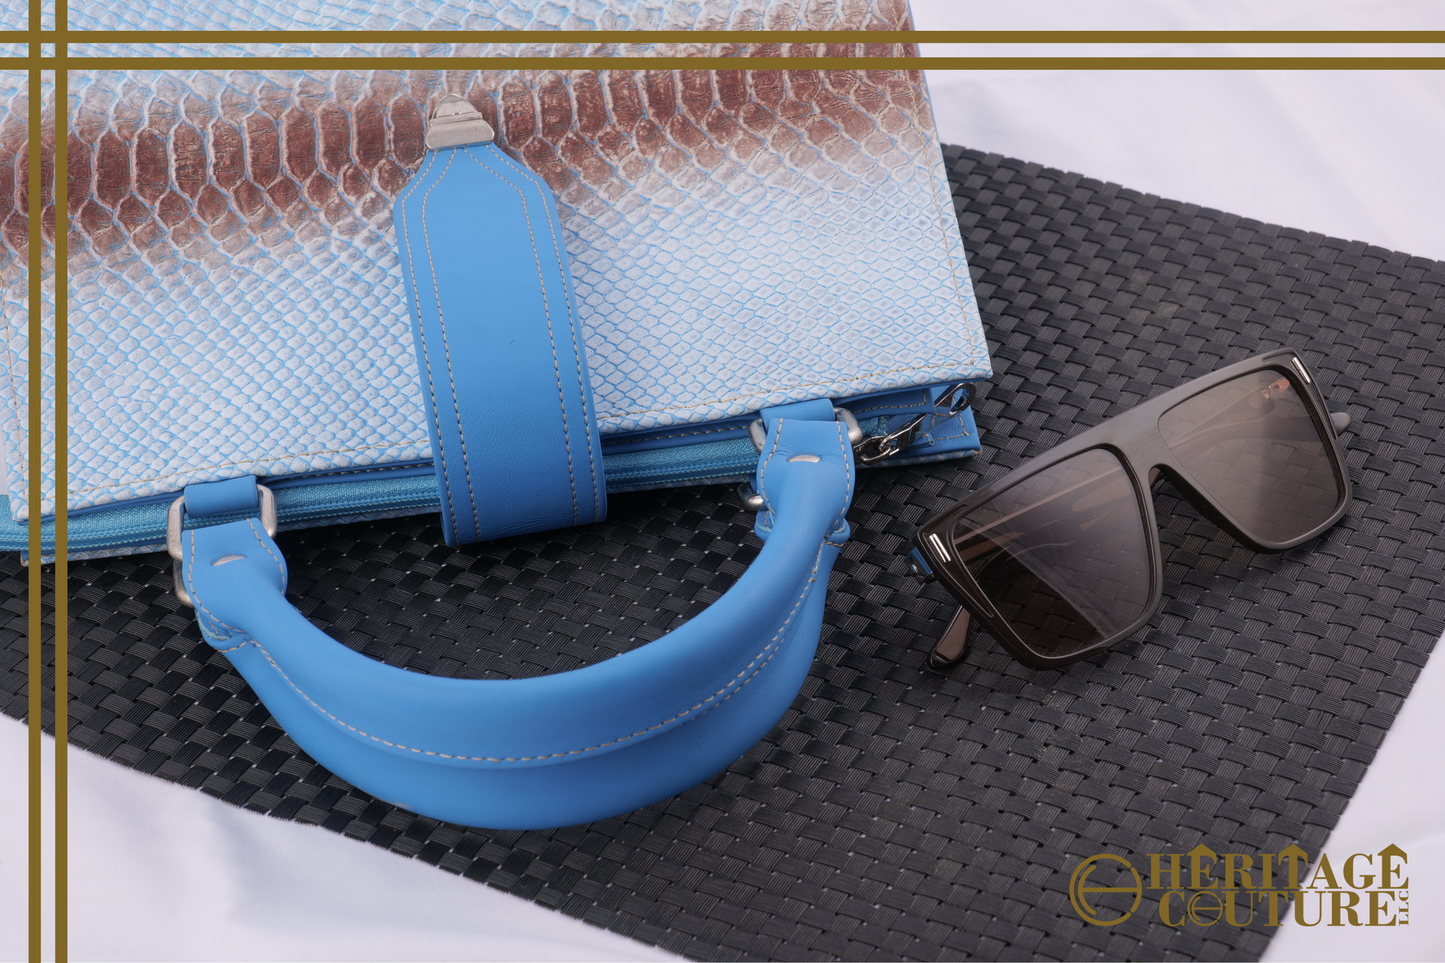 HC033 | Chic Gradient Elegance: Blue and Brown Crocodile-Embossed Ladies Handbag | 100% Genuine Cow Leather